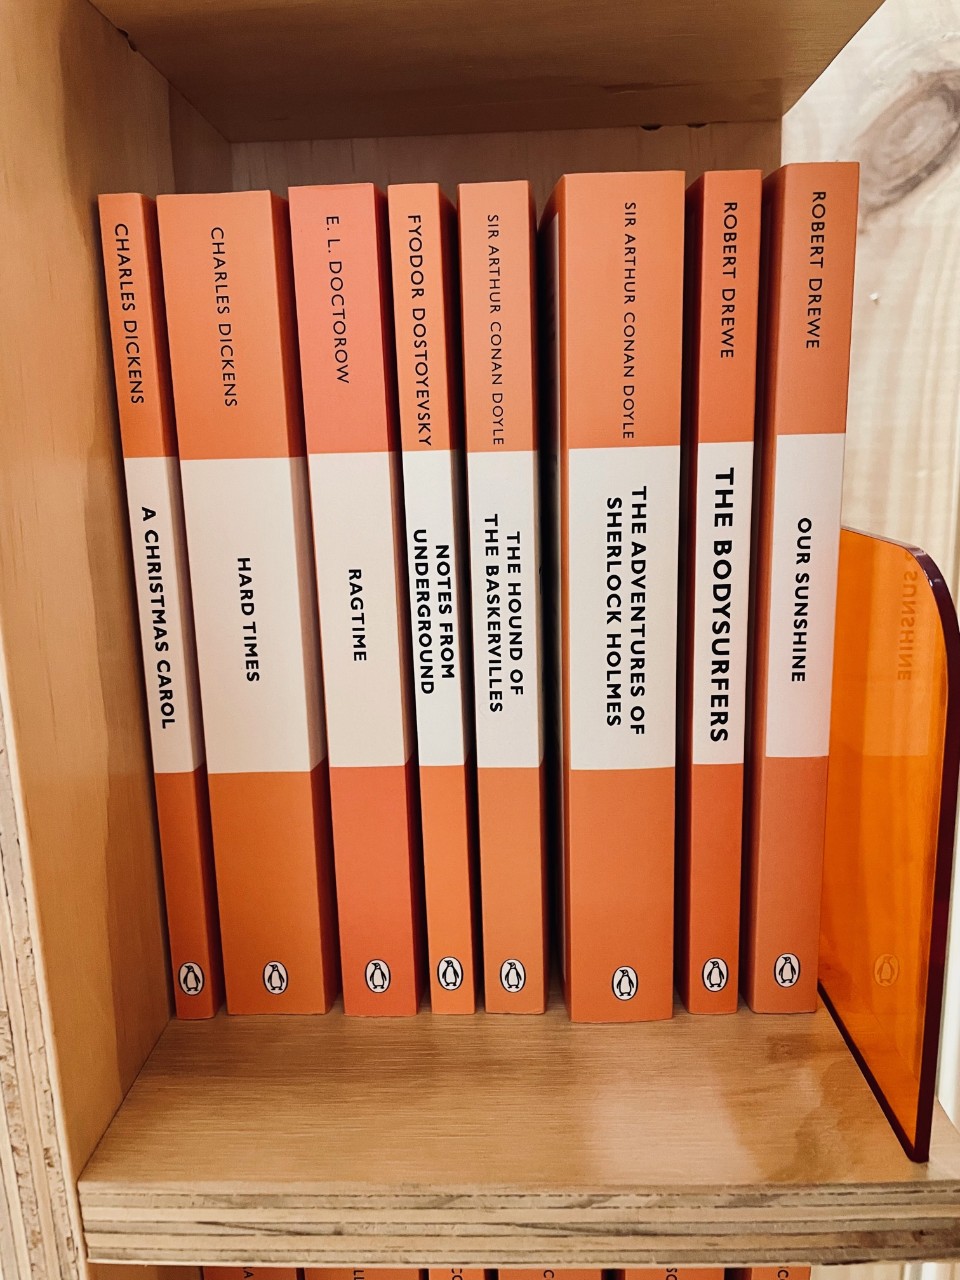 orange Penguin classic books on a book shelf in a shop